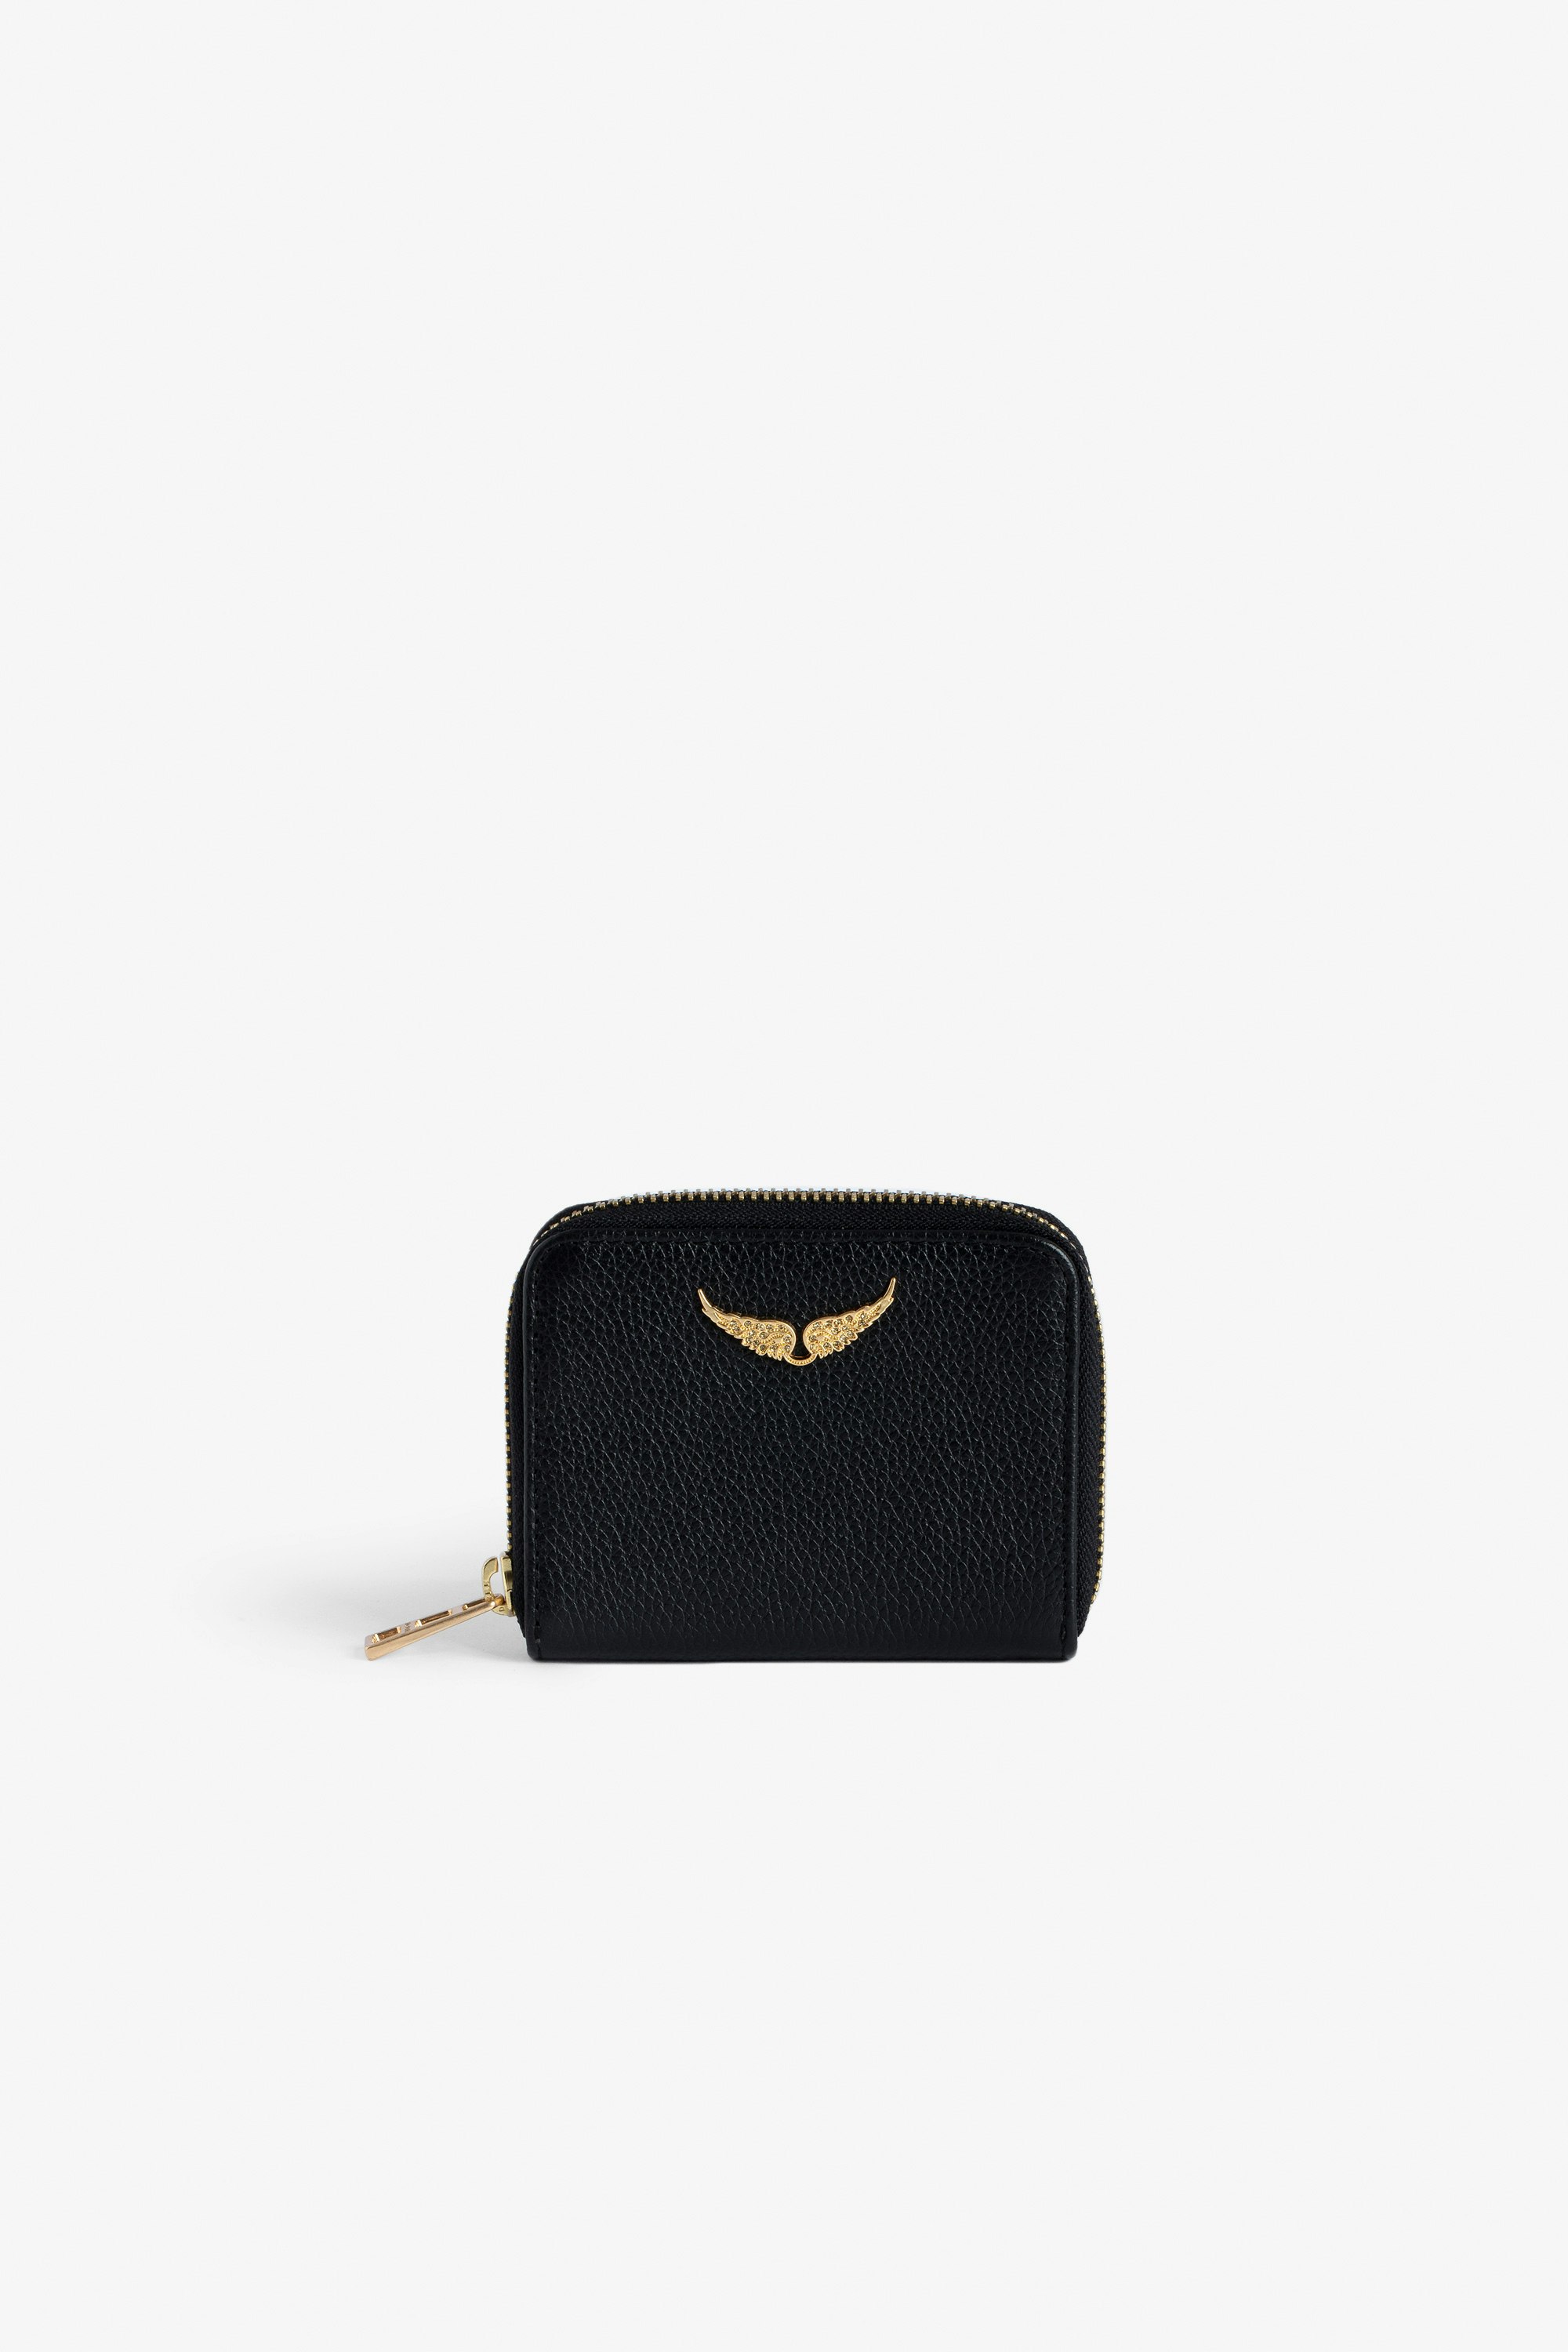 Porte-Monnaie Mini ZV - Portefeuille en cuir grainé noir à charm ailes dorées en strass.